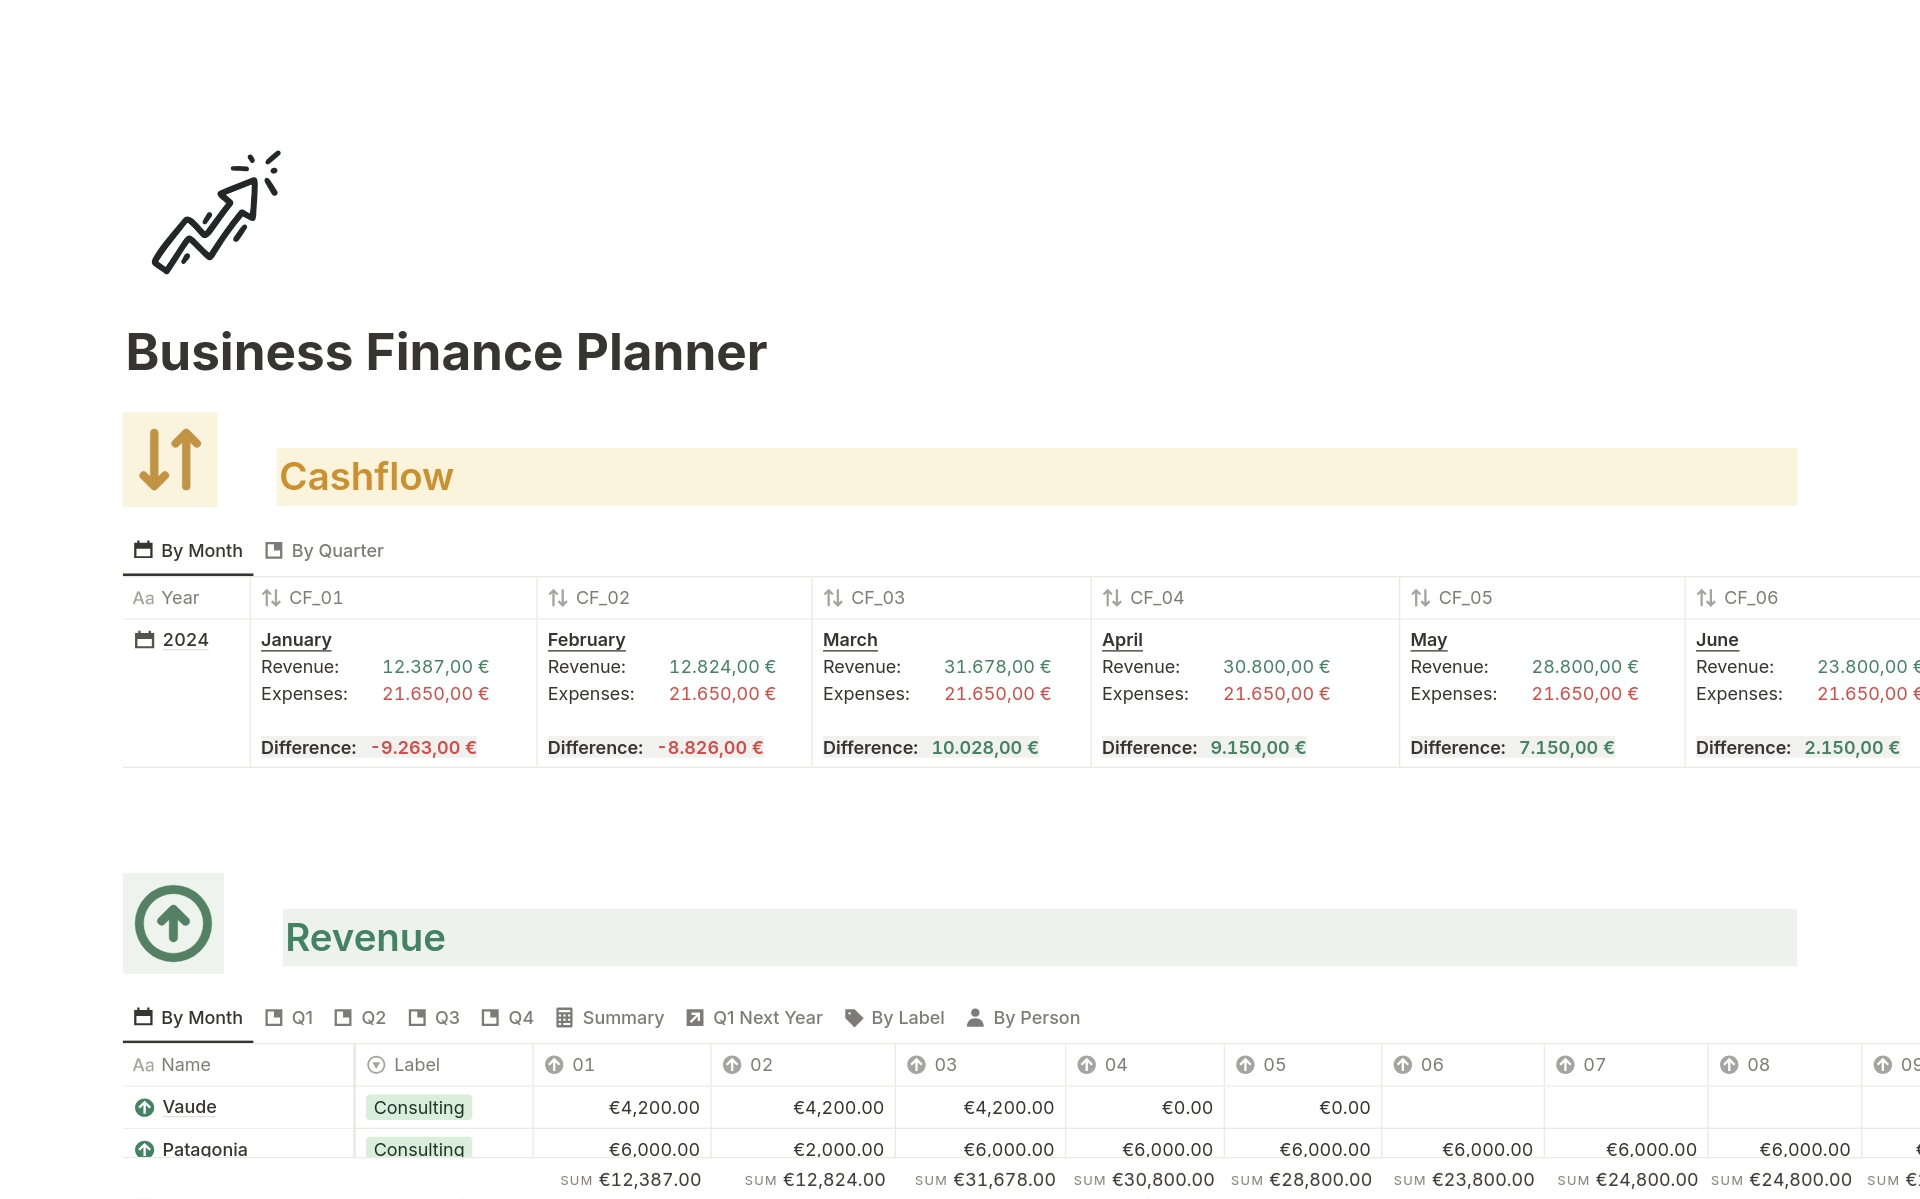 Vista previa de una plantilla para Business Finance Planner